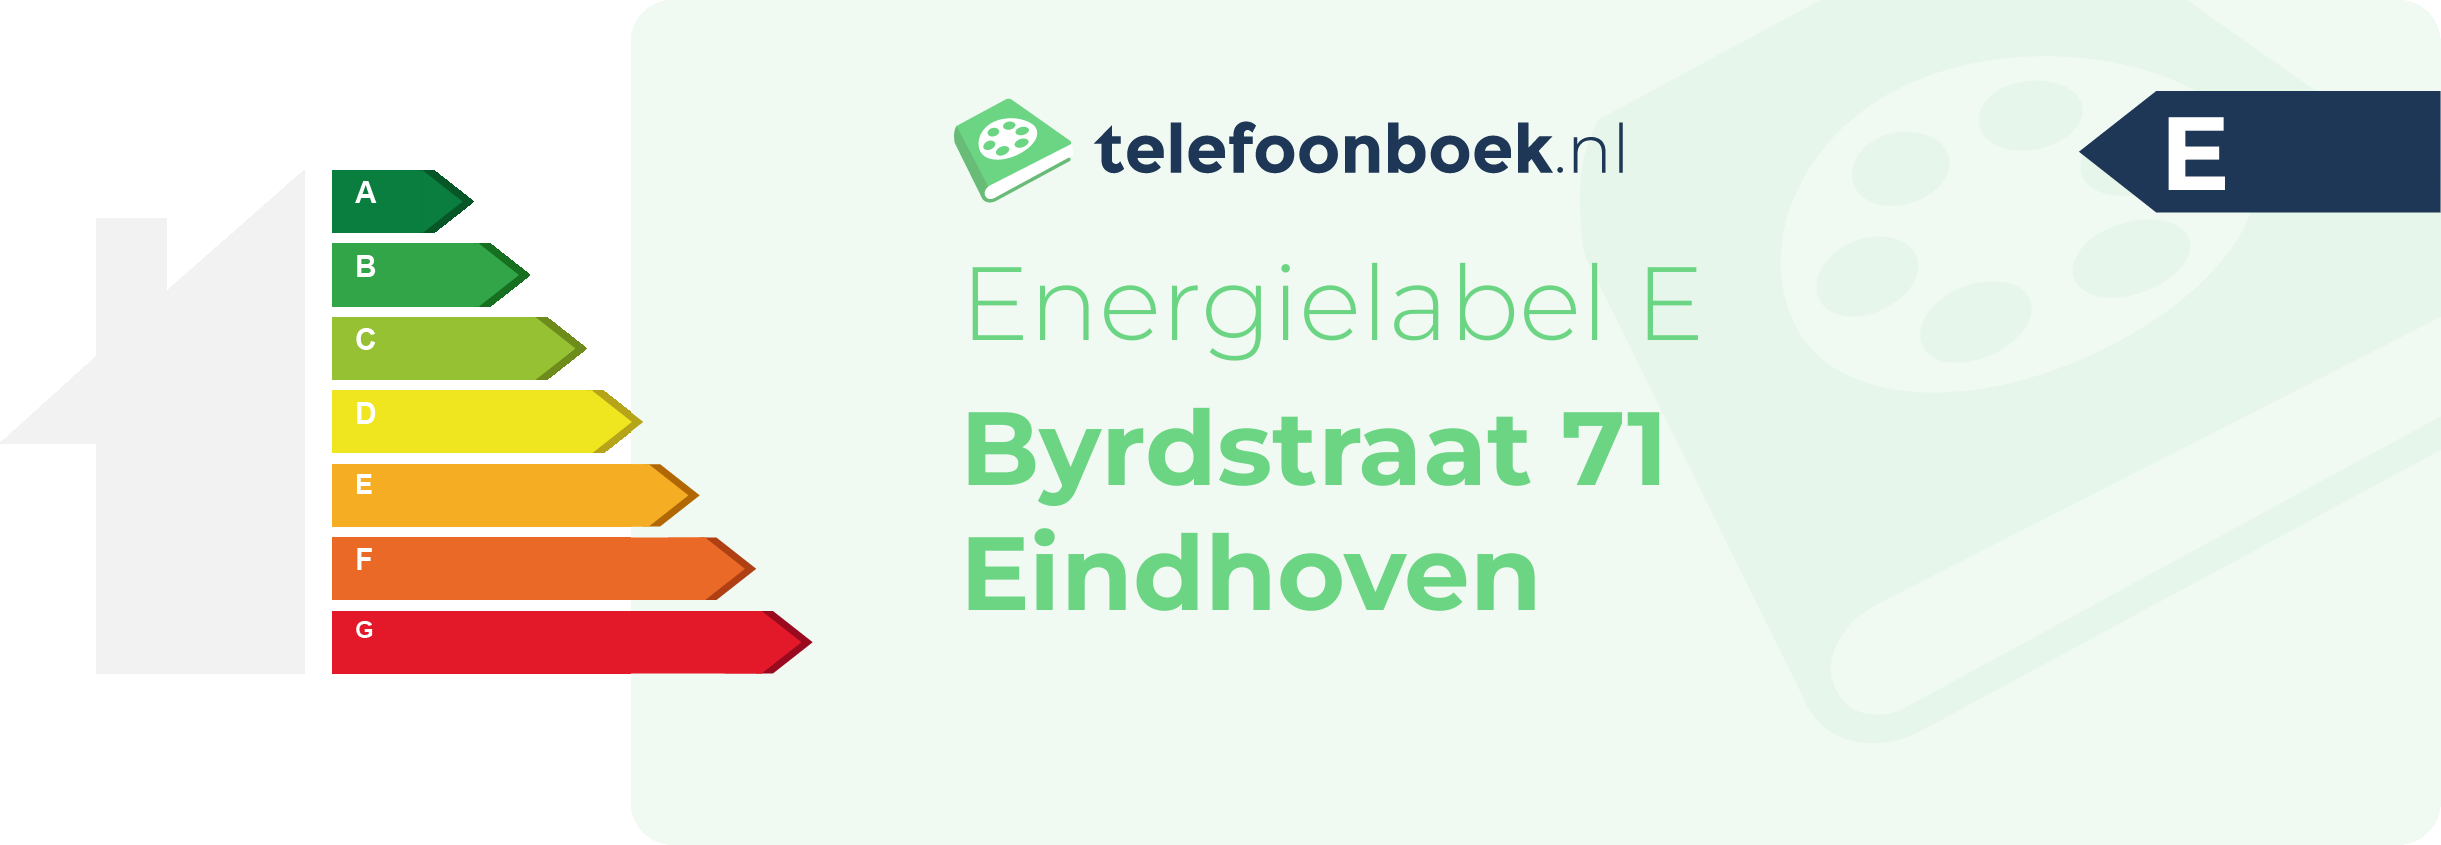 Energielabel Byrdstraat 71 Eindhoven